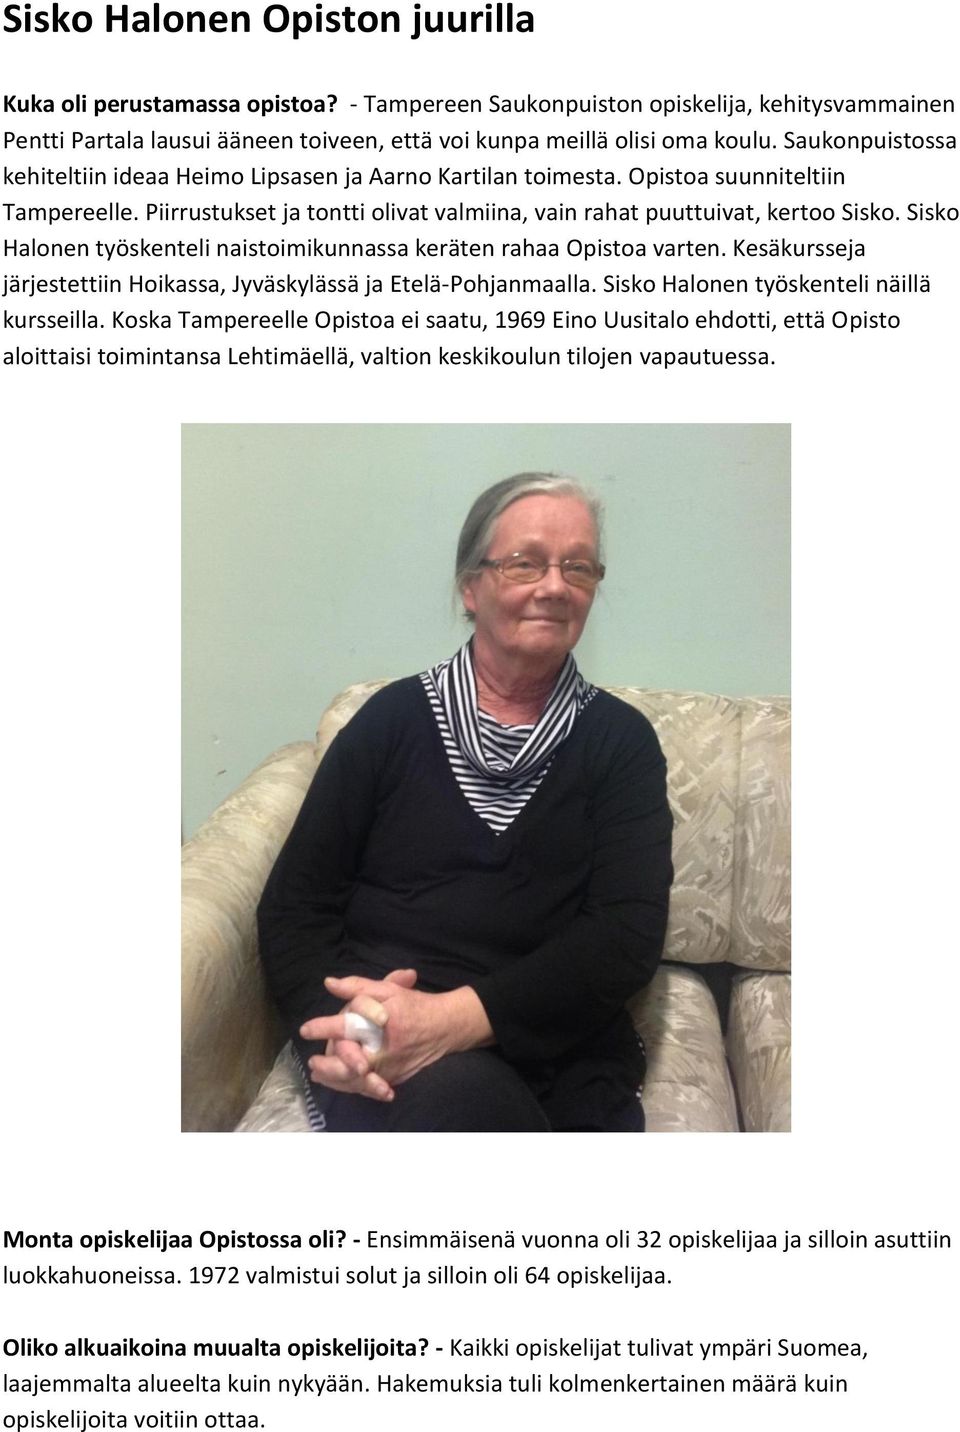 Sisko Halonen työskenteli naistoimikunnassa keräten rahaa Opistoa varten. Kesäkursseja järjestettiin Hoikassa, Jyväskylässä ja Etelä-Pohjanmaalla. Sisko Halonen työskenteli näillä kursseilla.